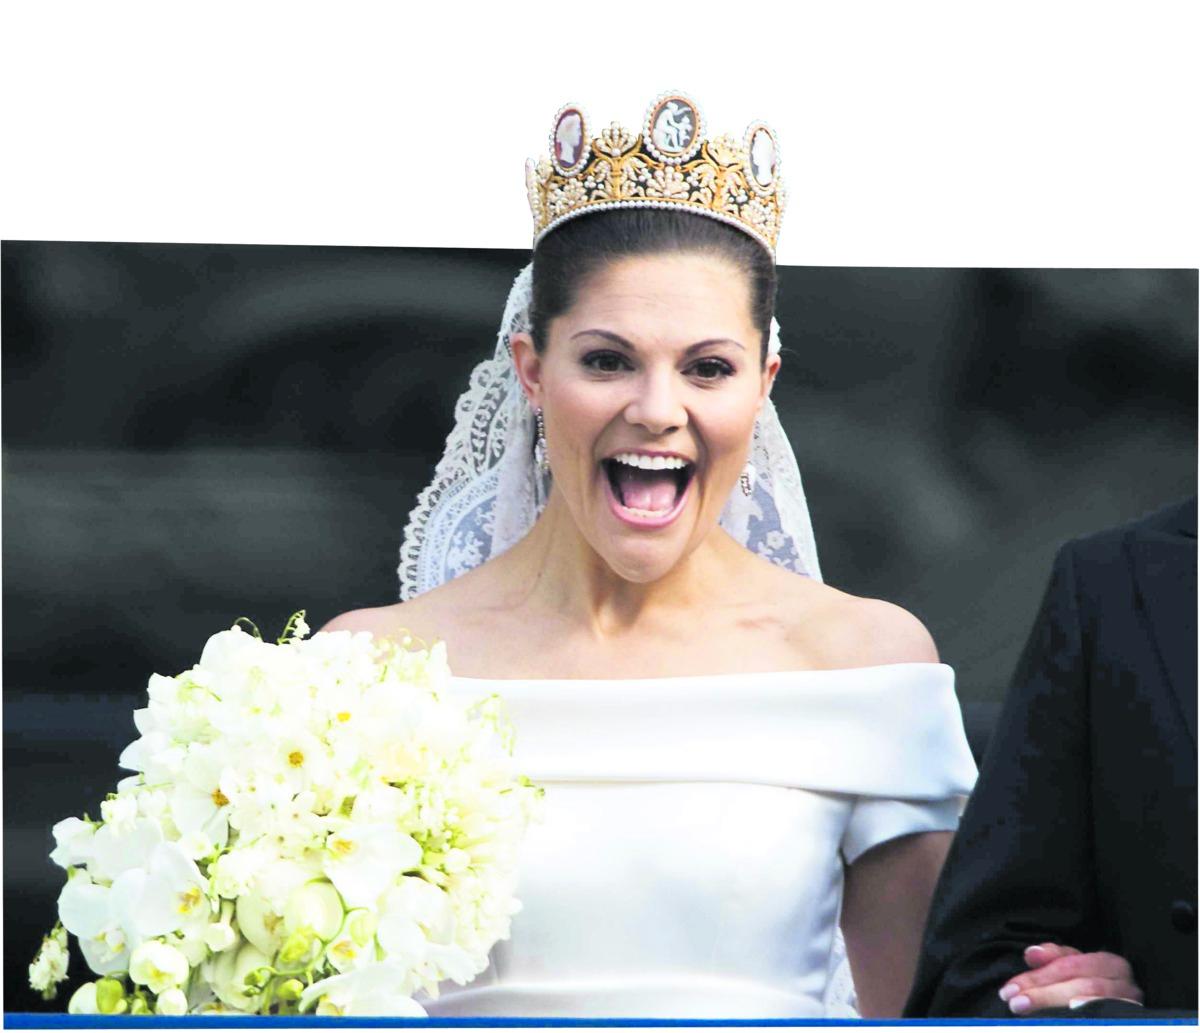 Snackis Kronprinsessan Victorias bröllop med Daniel Westling har gjort henne till årets snackis. Nu är hon hetast bland prinsessorna i världen, enligt den amerikanska affärstidningen Forbes lista.